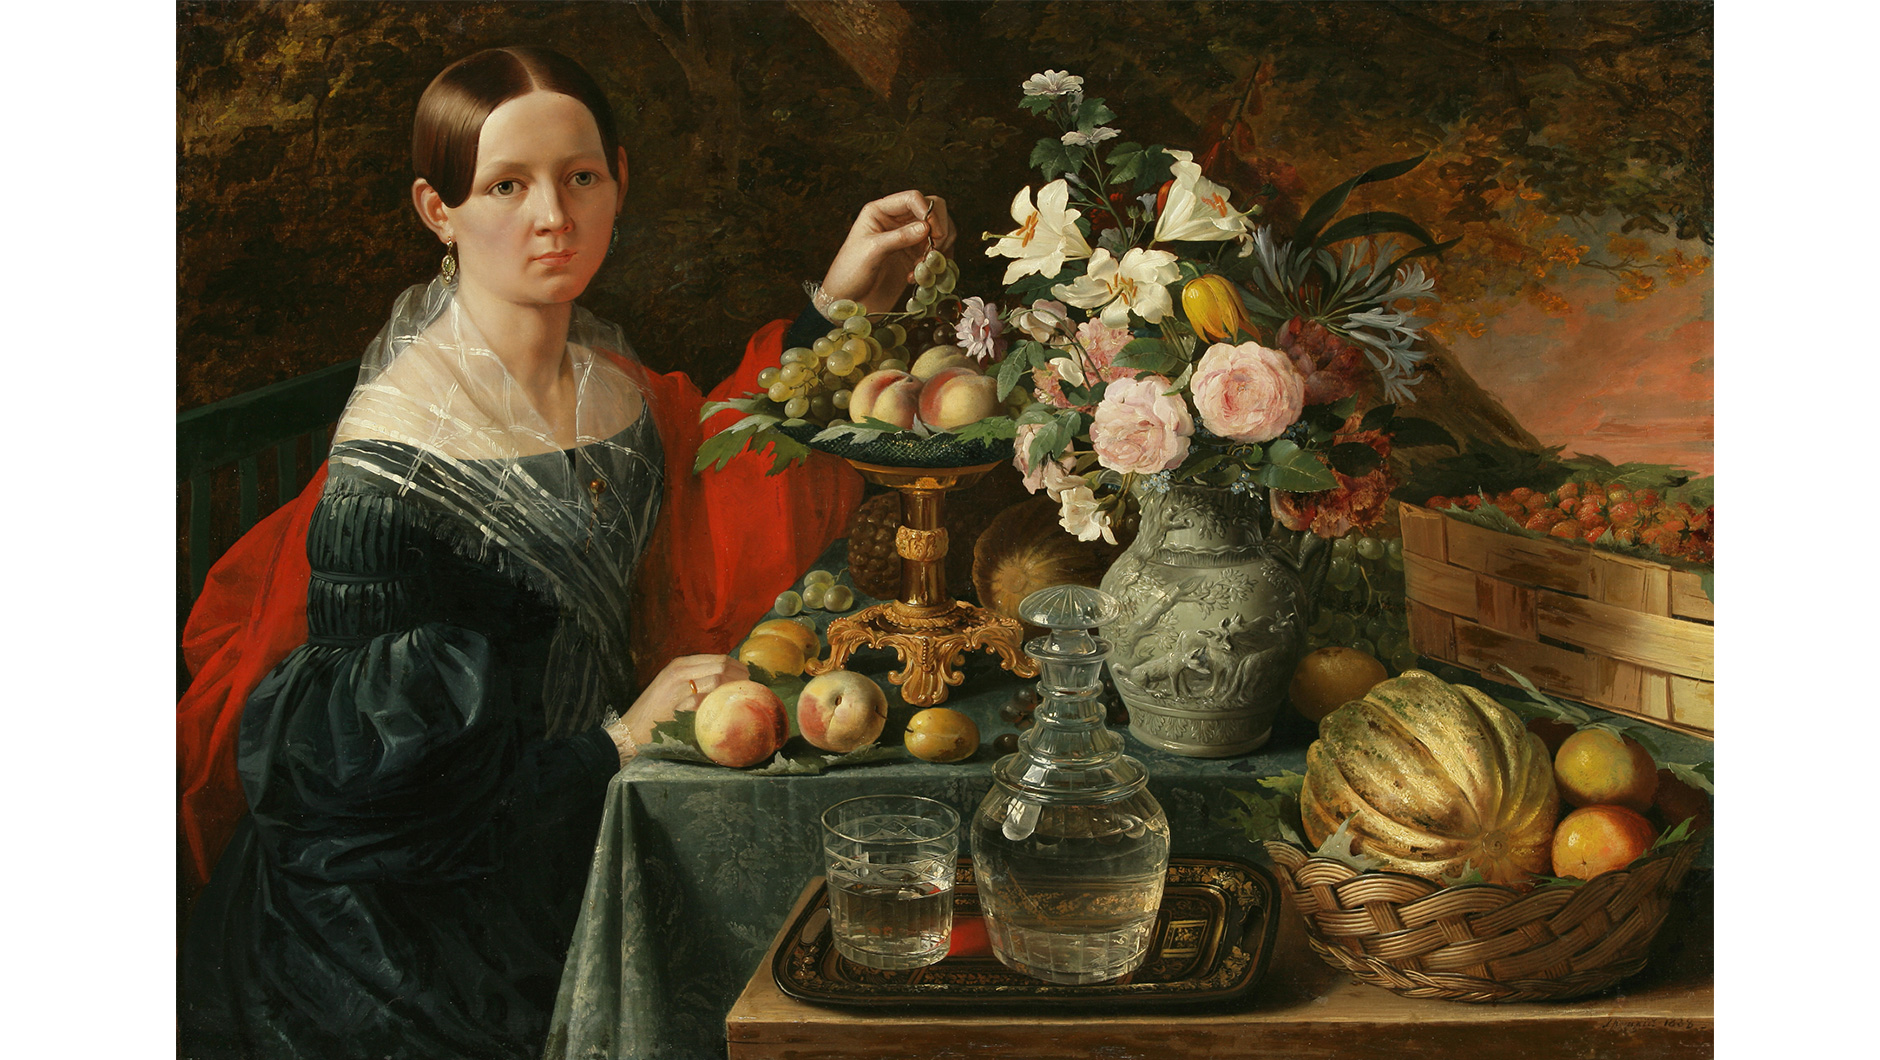 Иван Хруцкий. “Портрет неизвестной с цветами и фруктами» (1838)